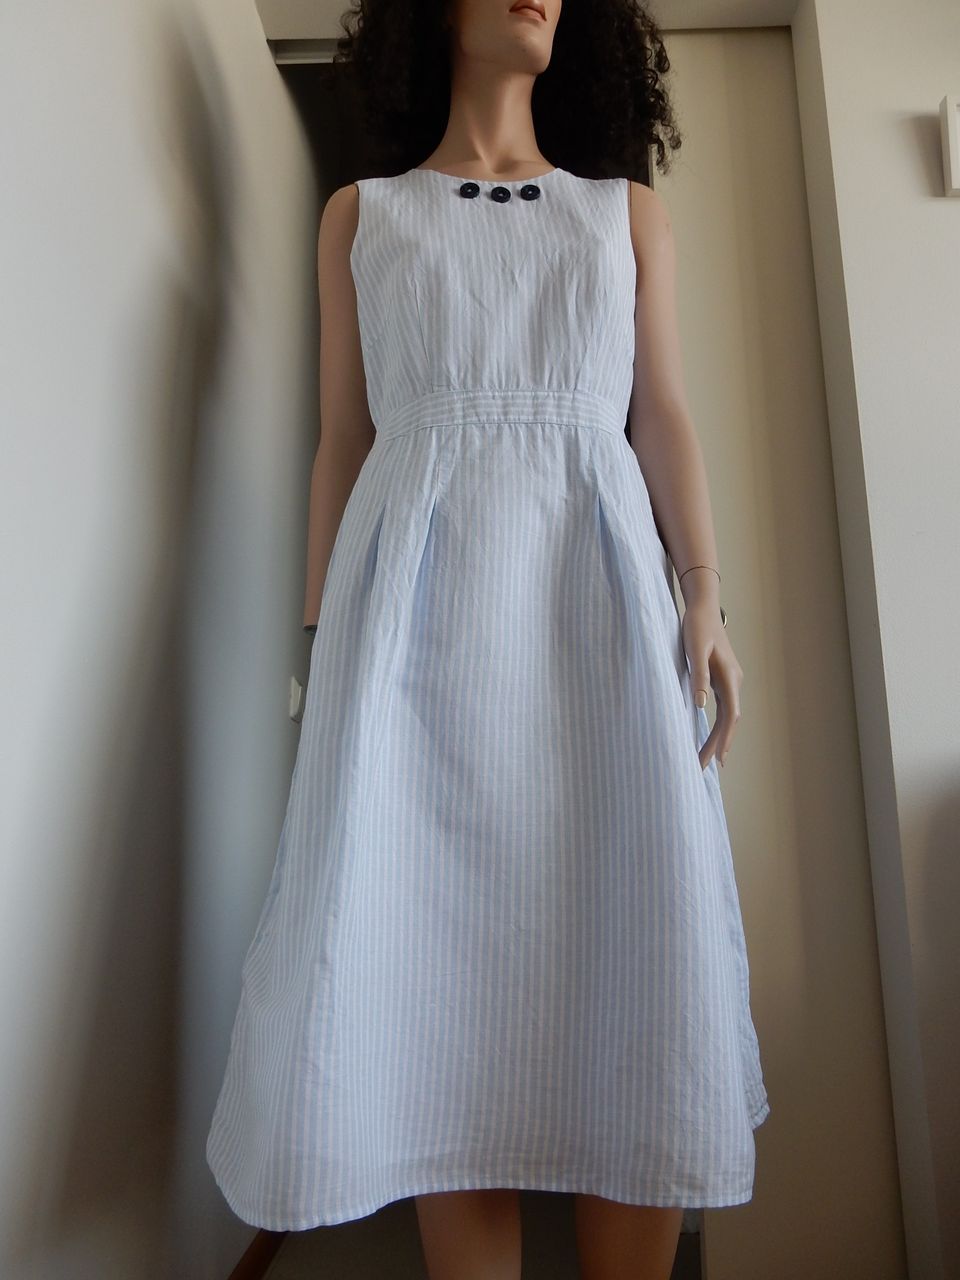 ESPRIT sini/valkoinen hihaton puuvilla mekko Koko 38